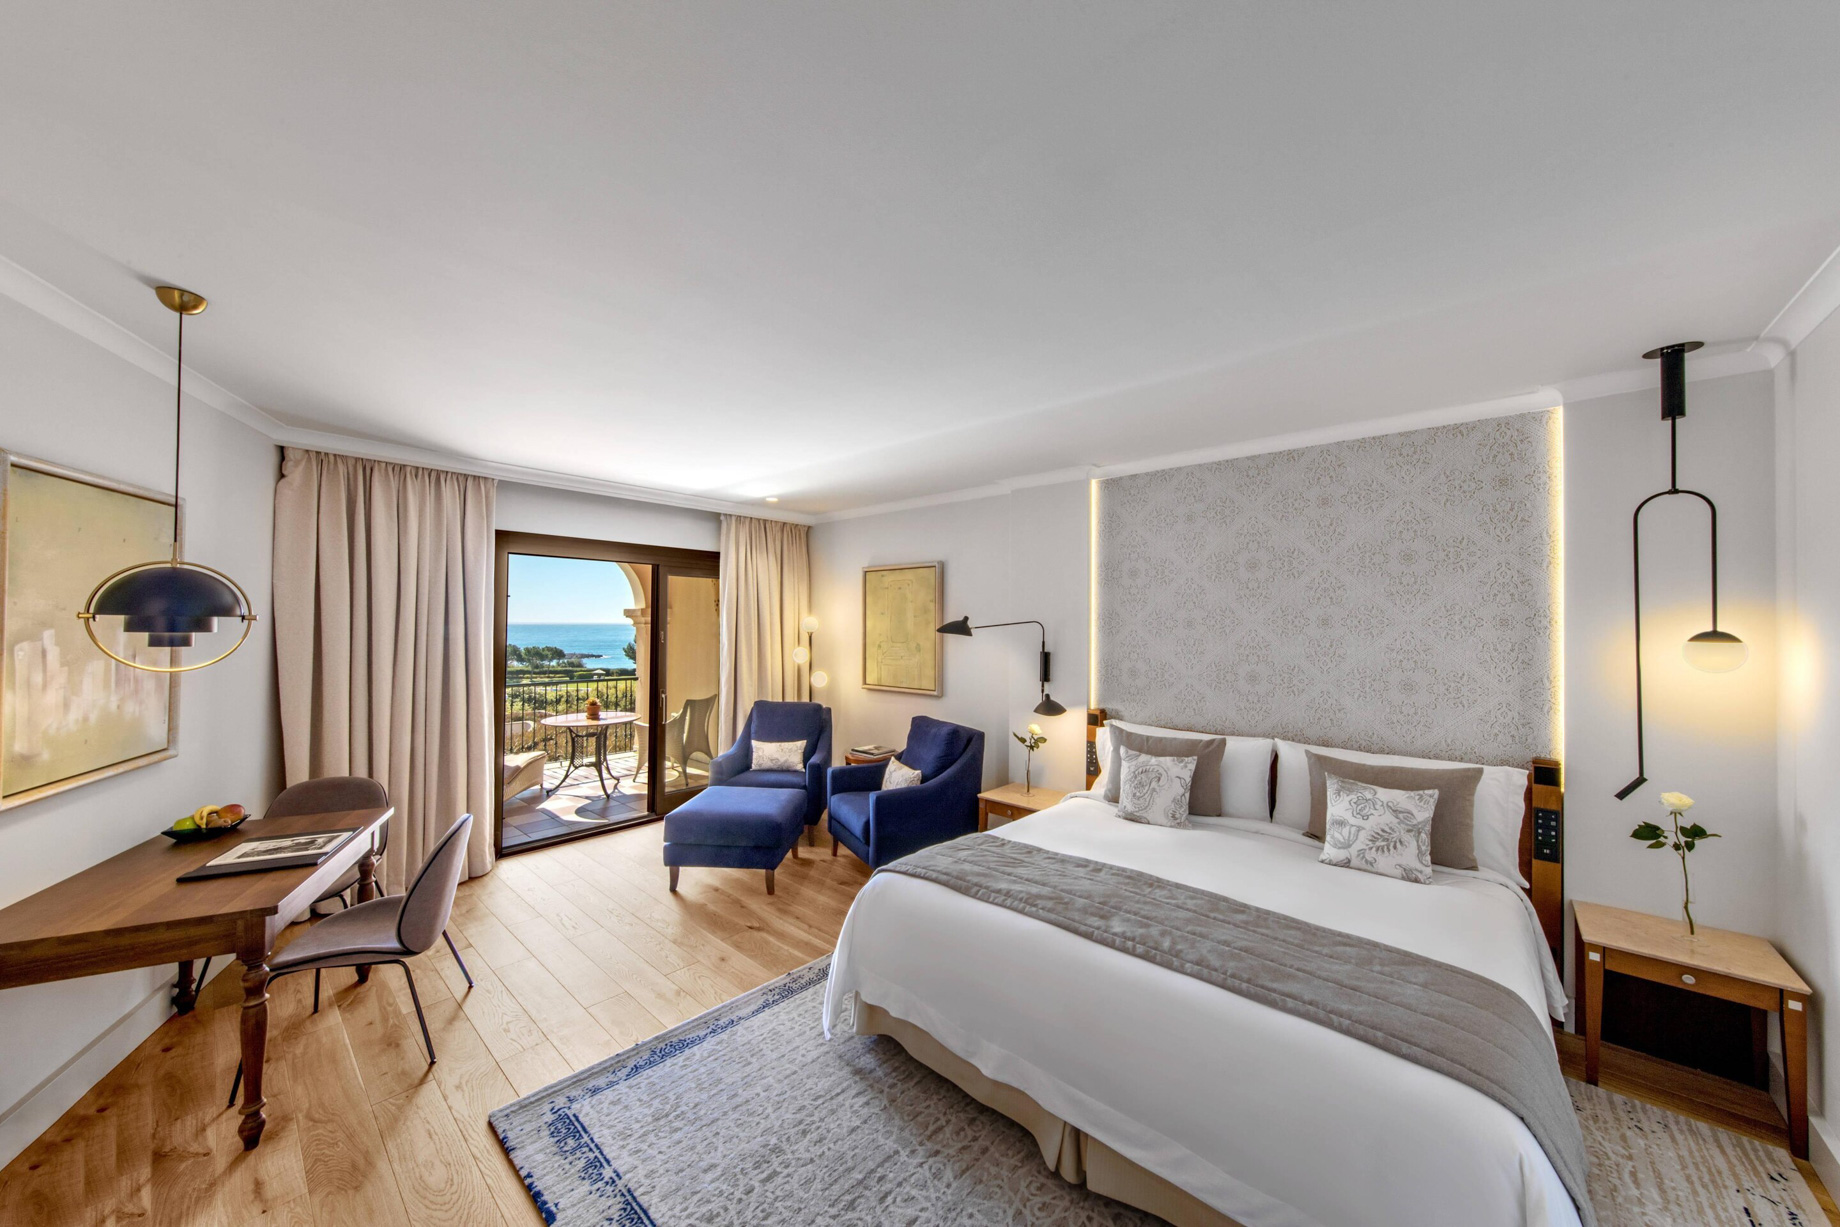 The St. Regis Mardavall Mallorca Resort – Palma de Mallorca, Spain – Grand Deluxe Sea View Bed